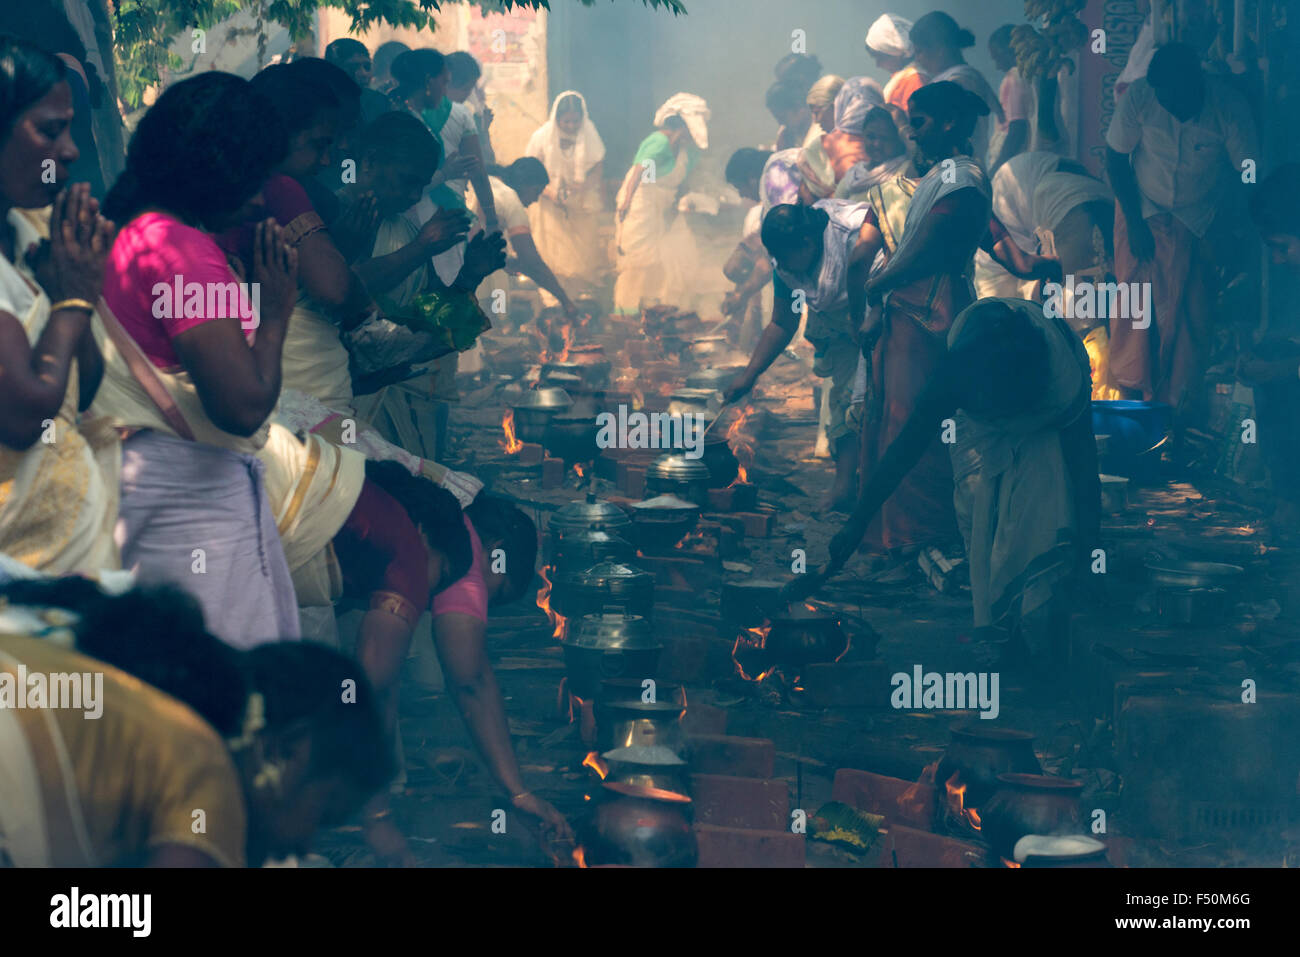 Viele Frauen, 3,5 Millionen insgesamt, sind Kochen Prasad auf offenem Feuer in den belebten Straßen während der pongala Festival Stockfoto